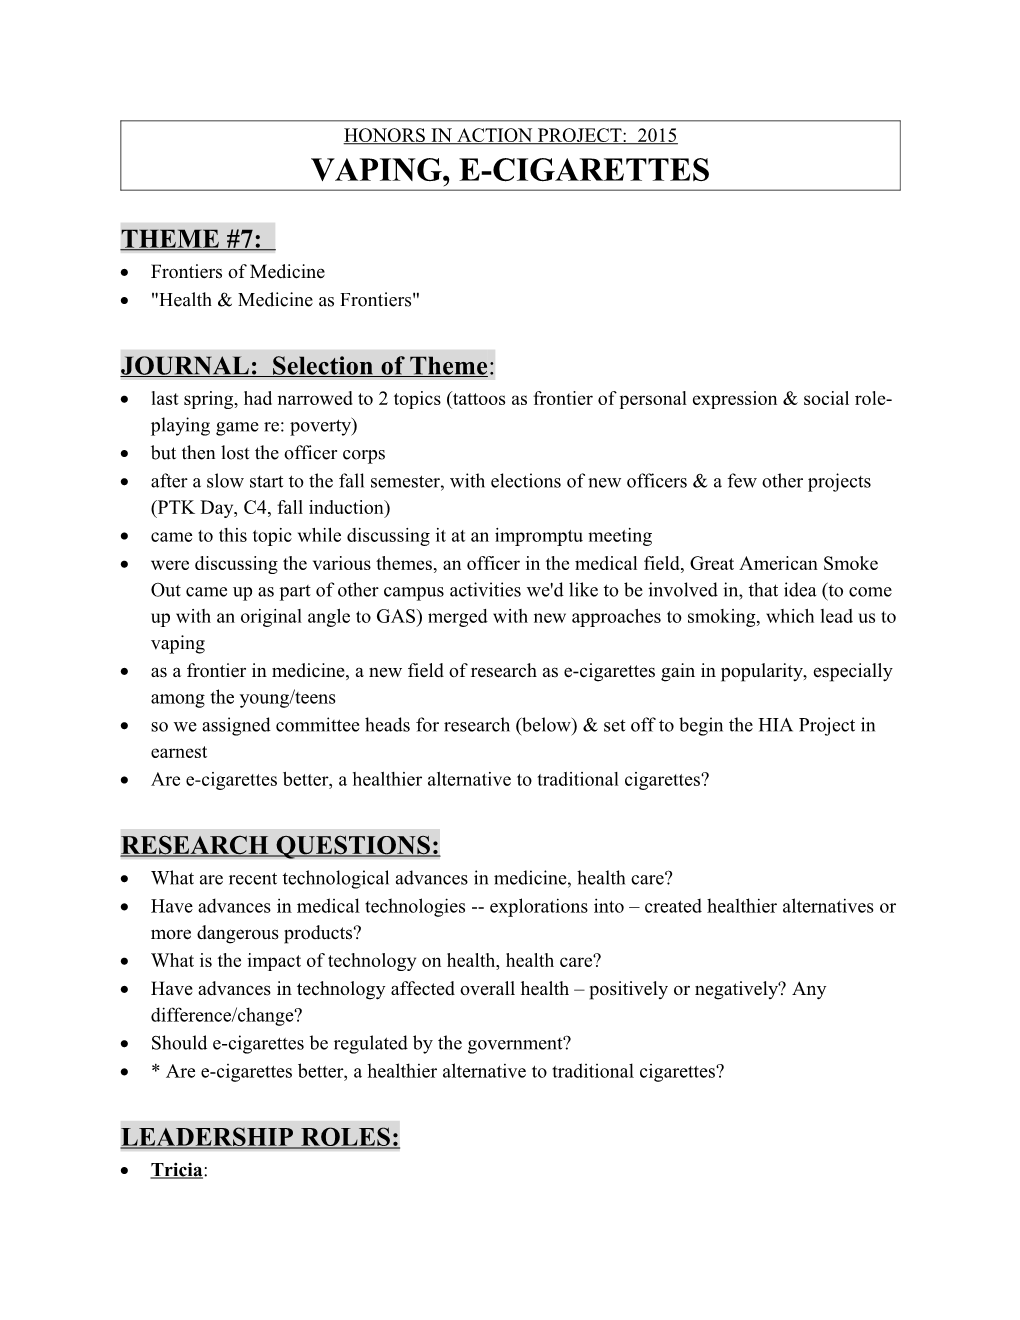 Vaping, E-Cigarettes